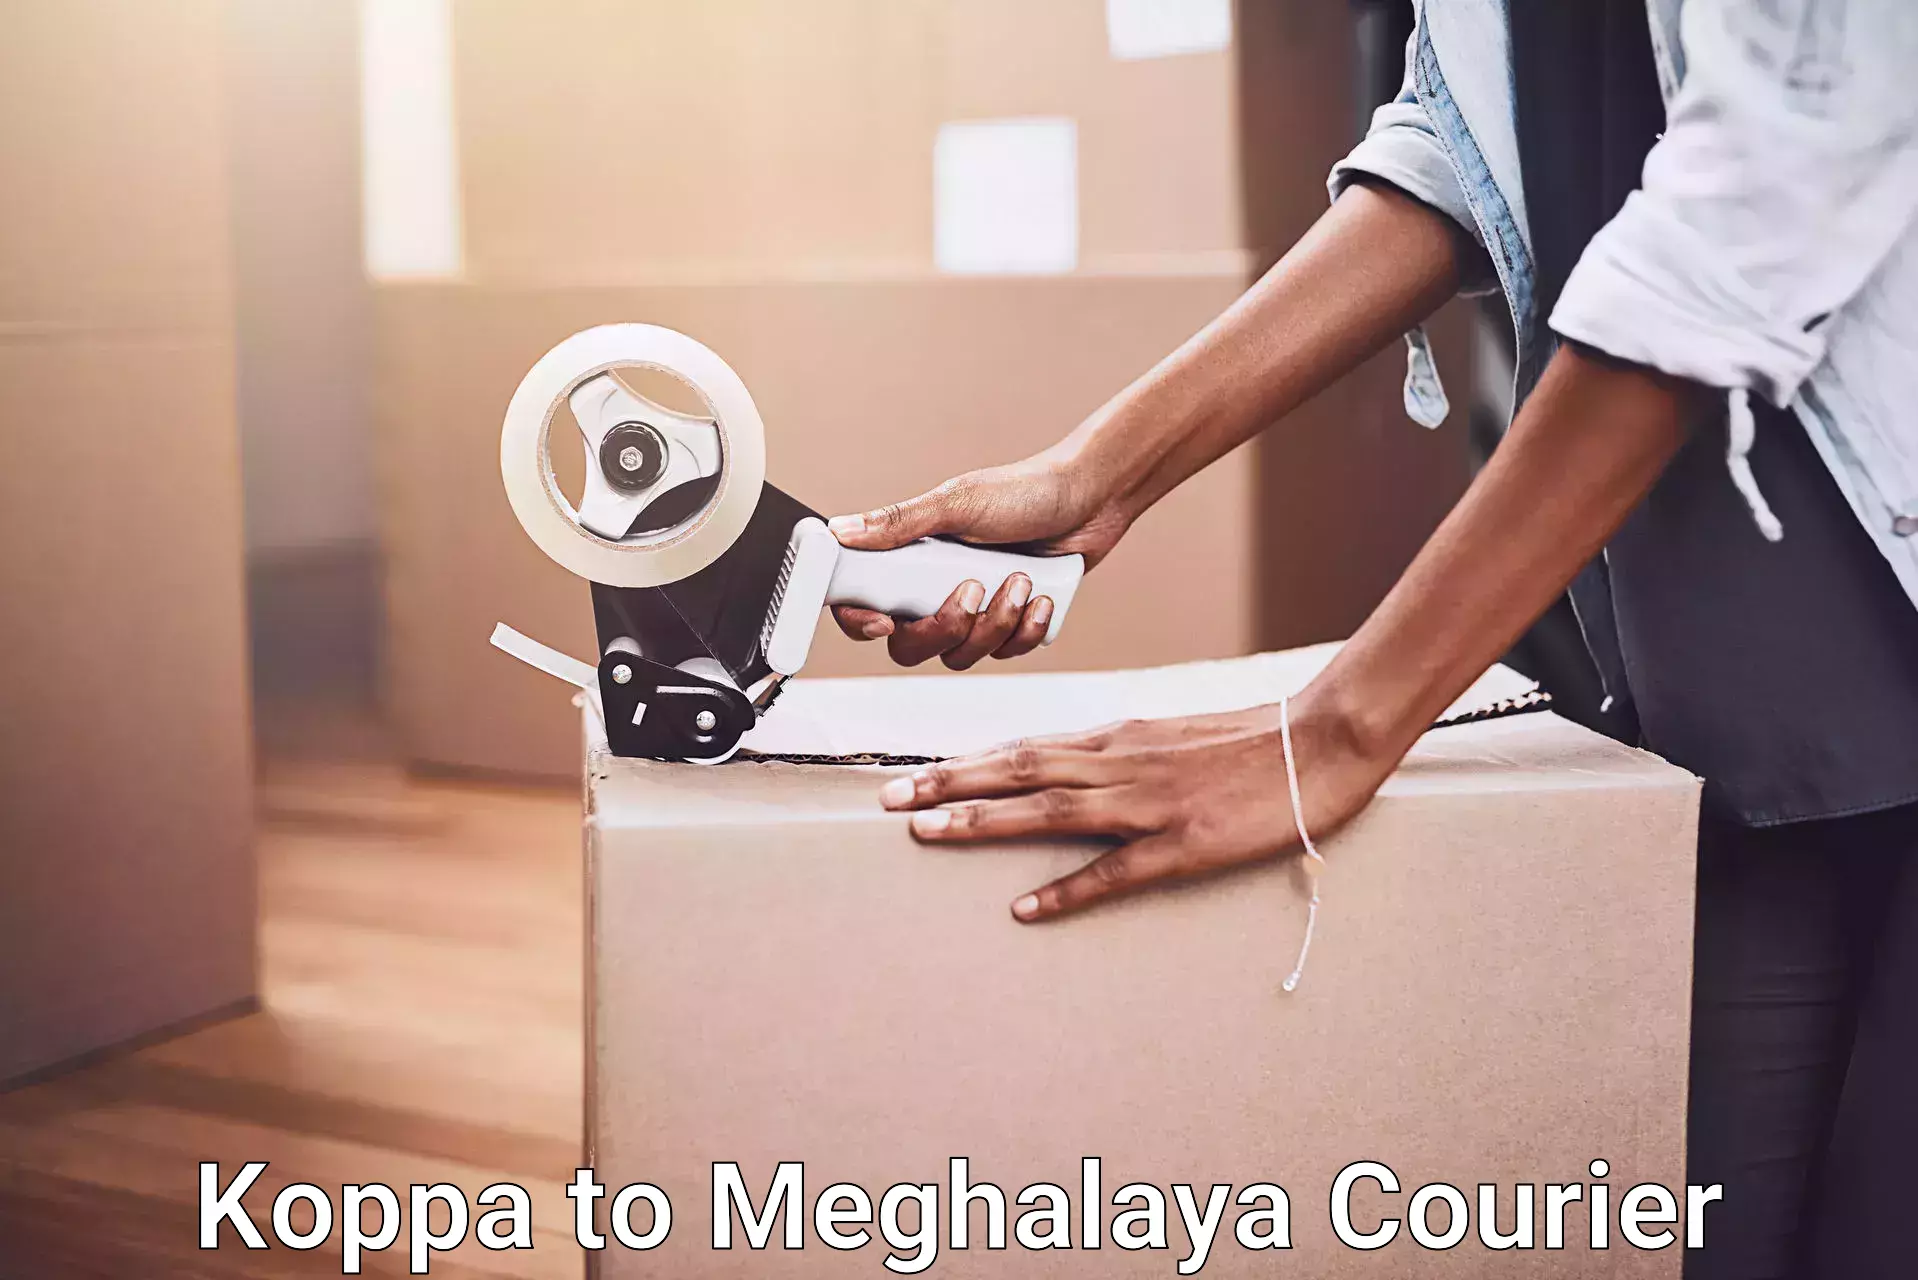 Furniture transport services Koppa to Meghalaya